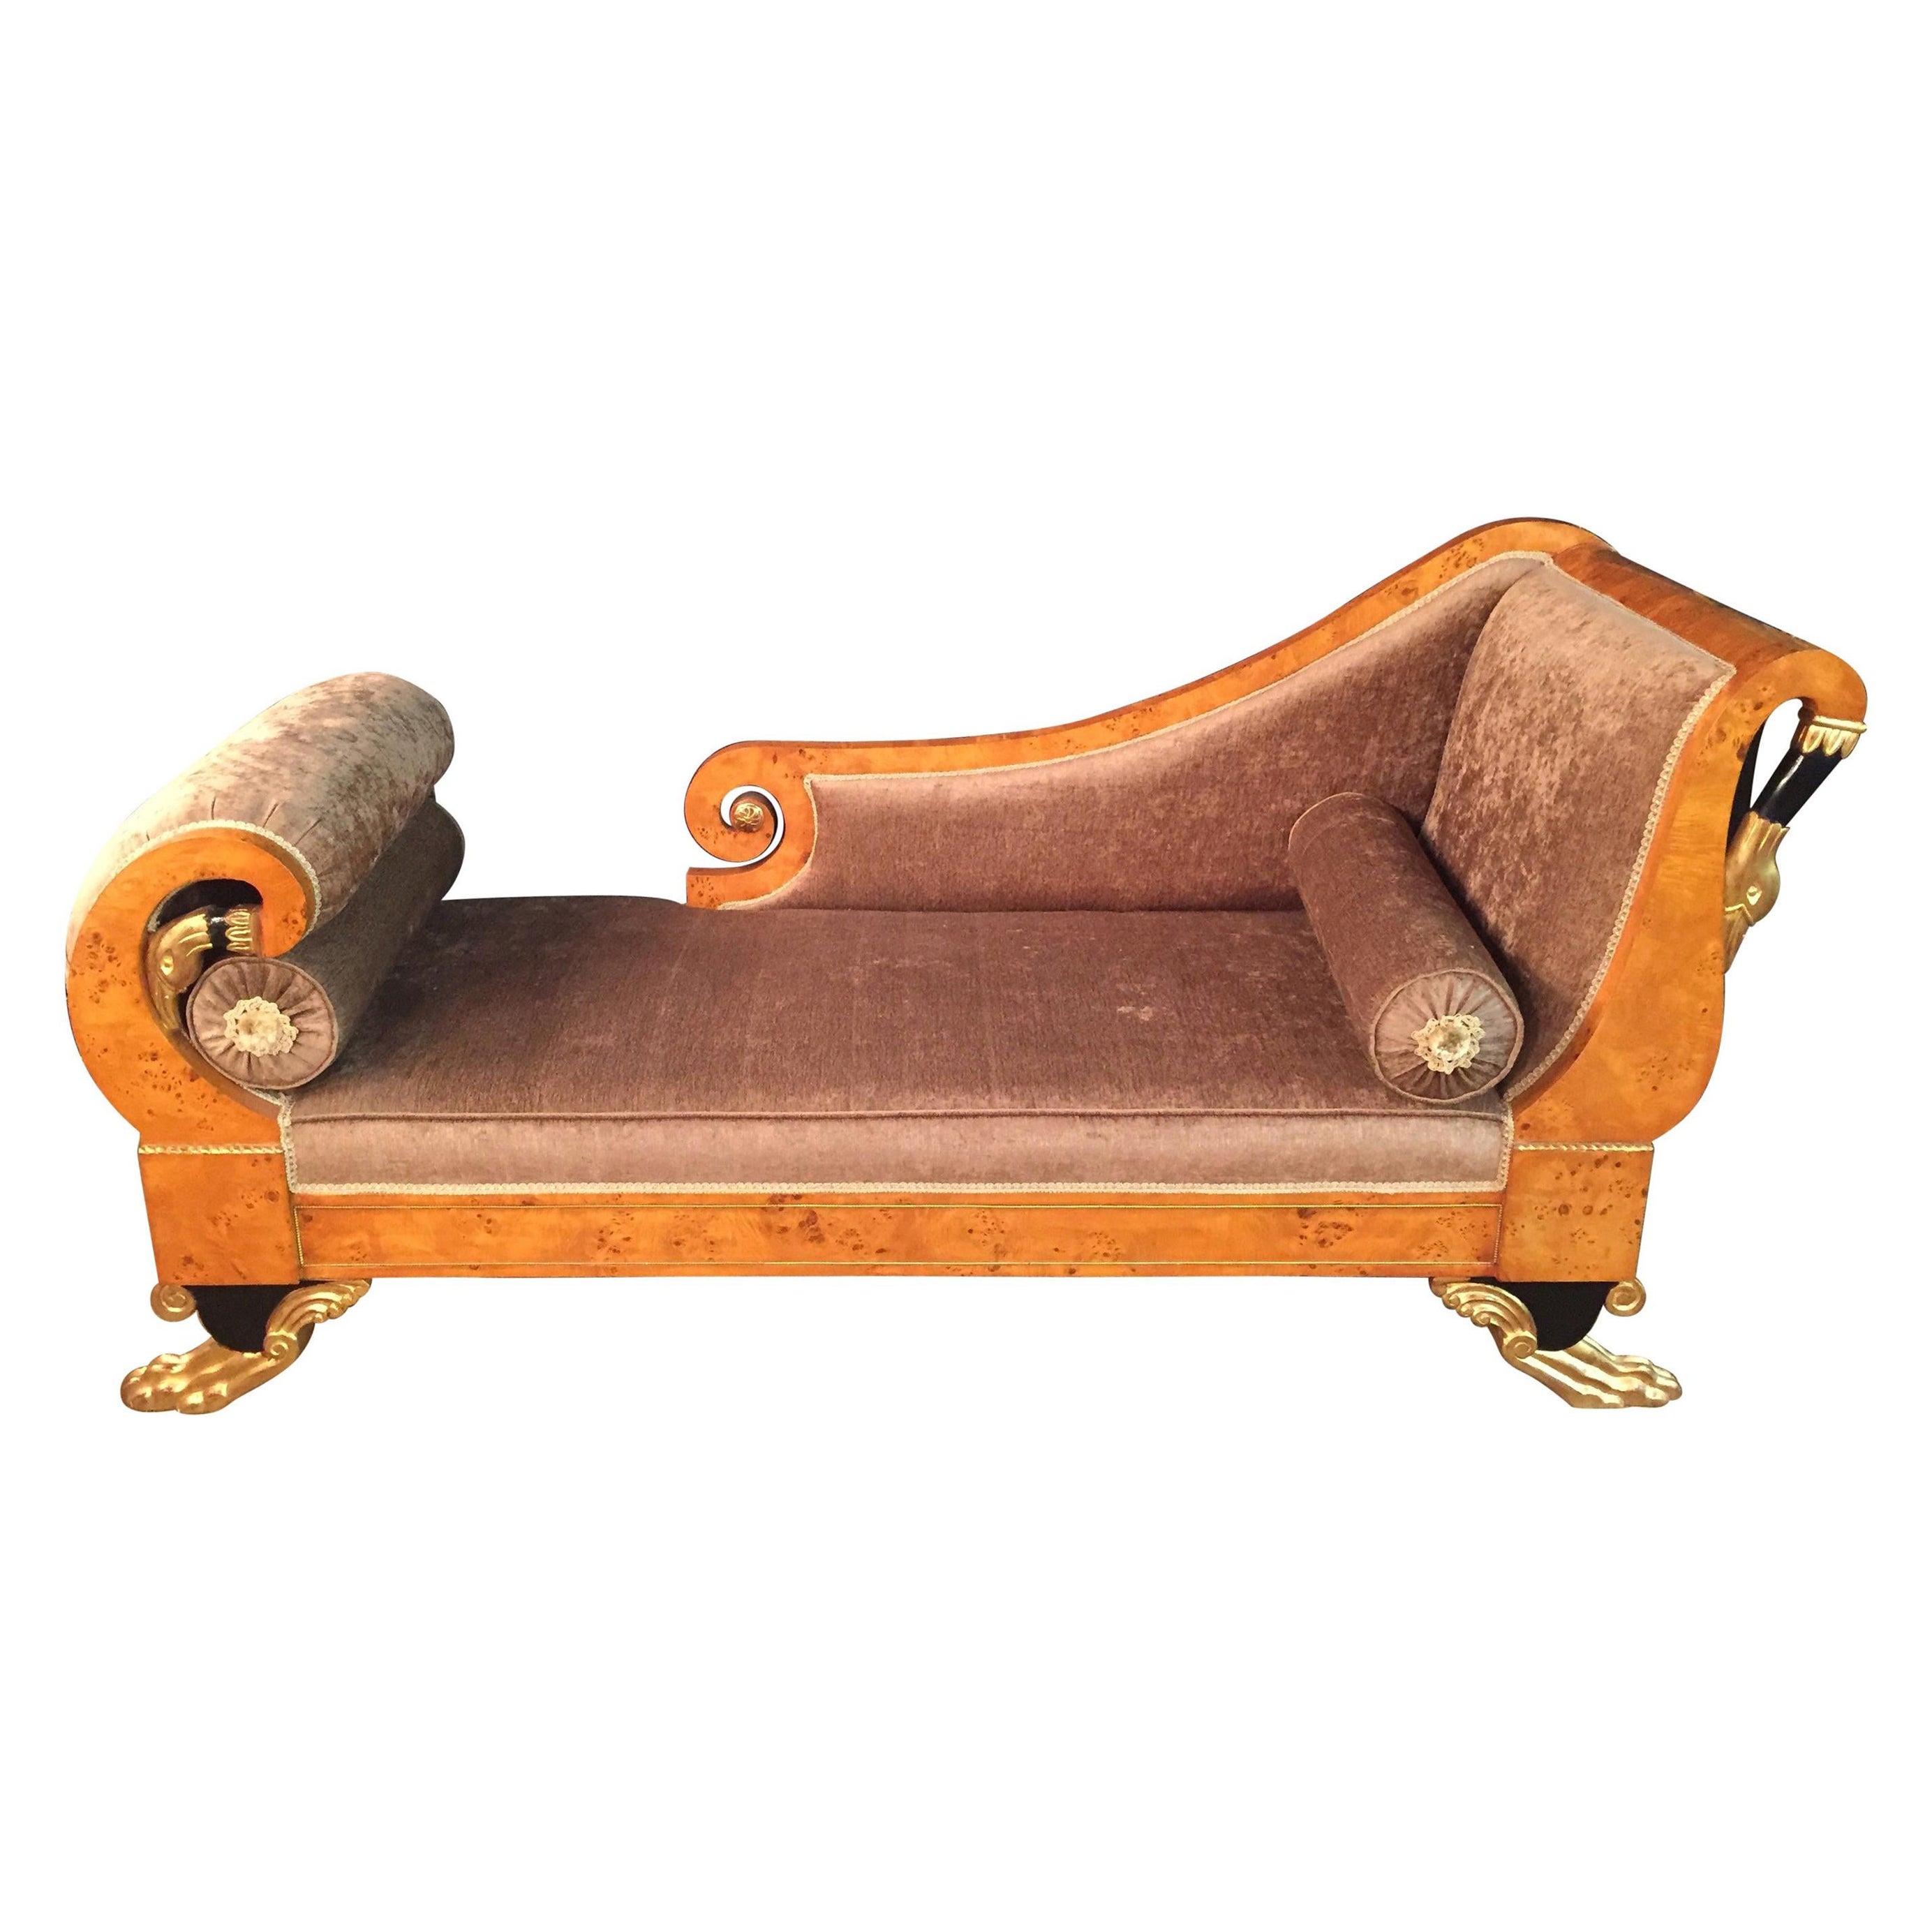 Chaise longue Empire Swan de style Classizim du 20ème siècle